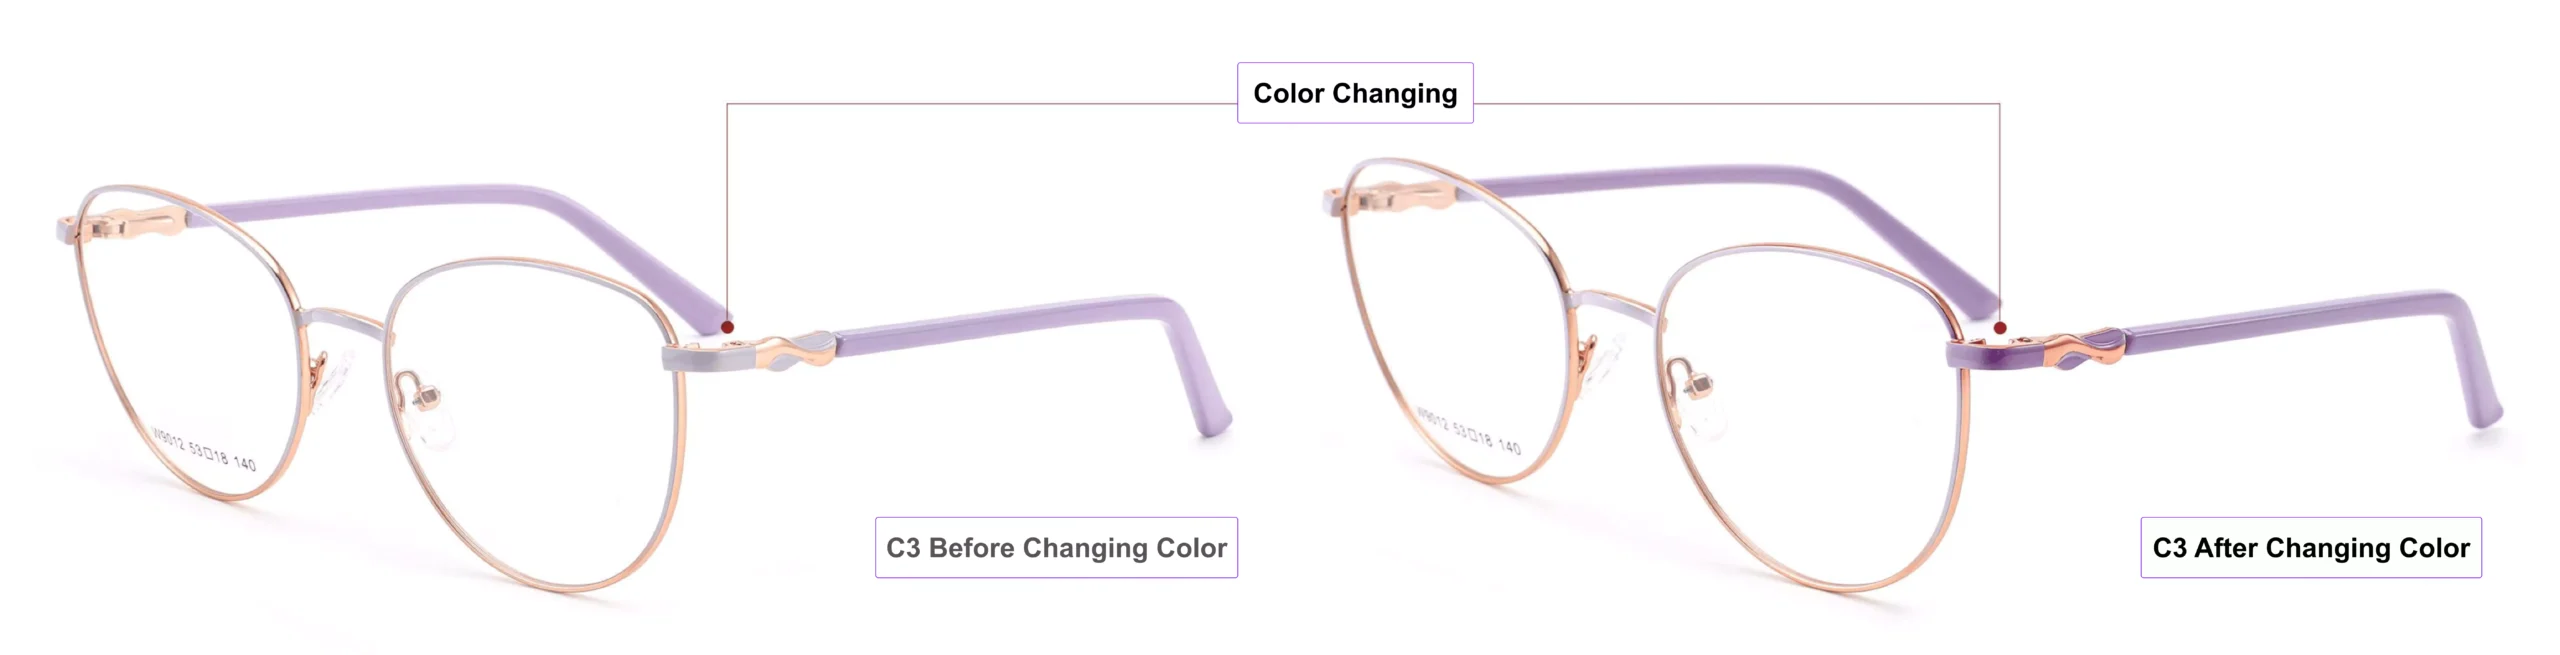 Color Changing Glasses Frames, process of glasses color changing, petal pink,mist violet, gold